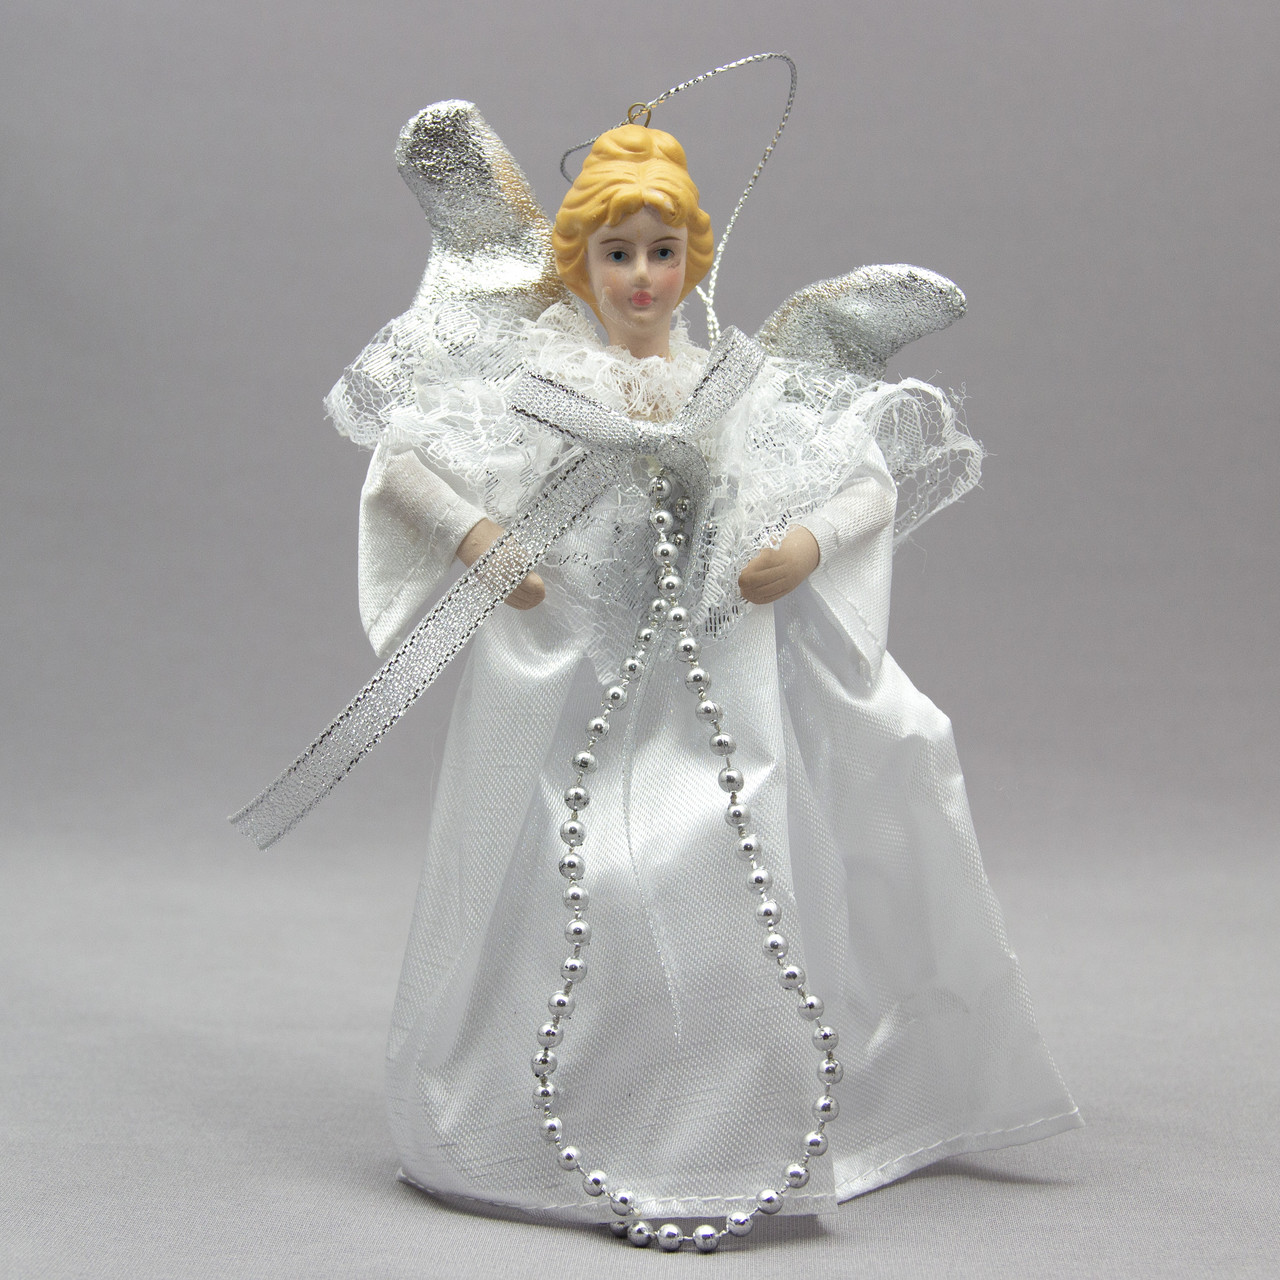 Новорічна ялинкова іграшка - фігурка Янгол з крилами, 15 см, срібний янгол з бантом, пластик (000319-3)